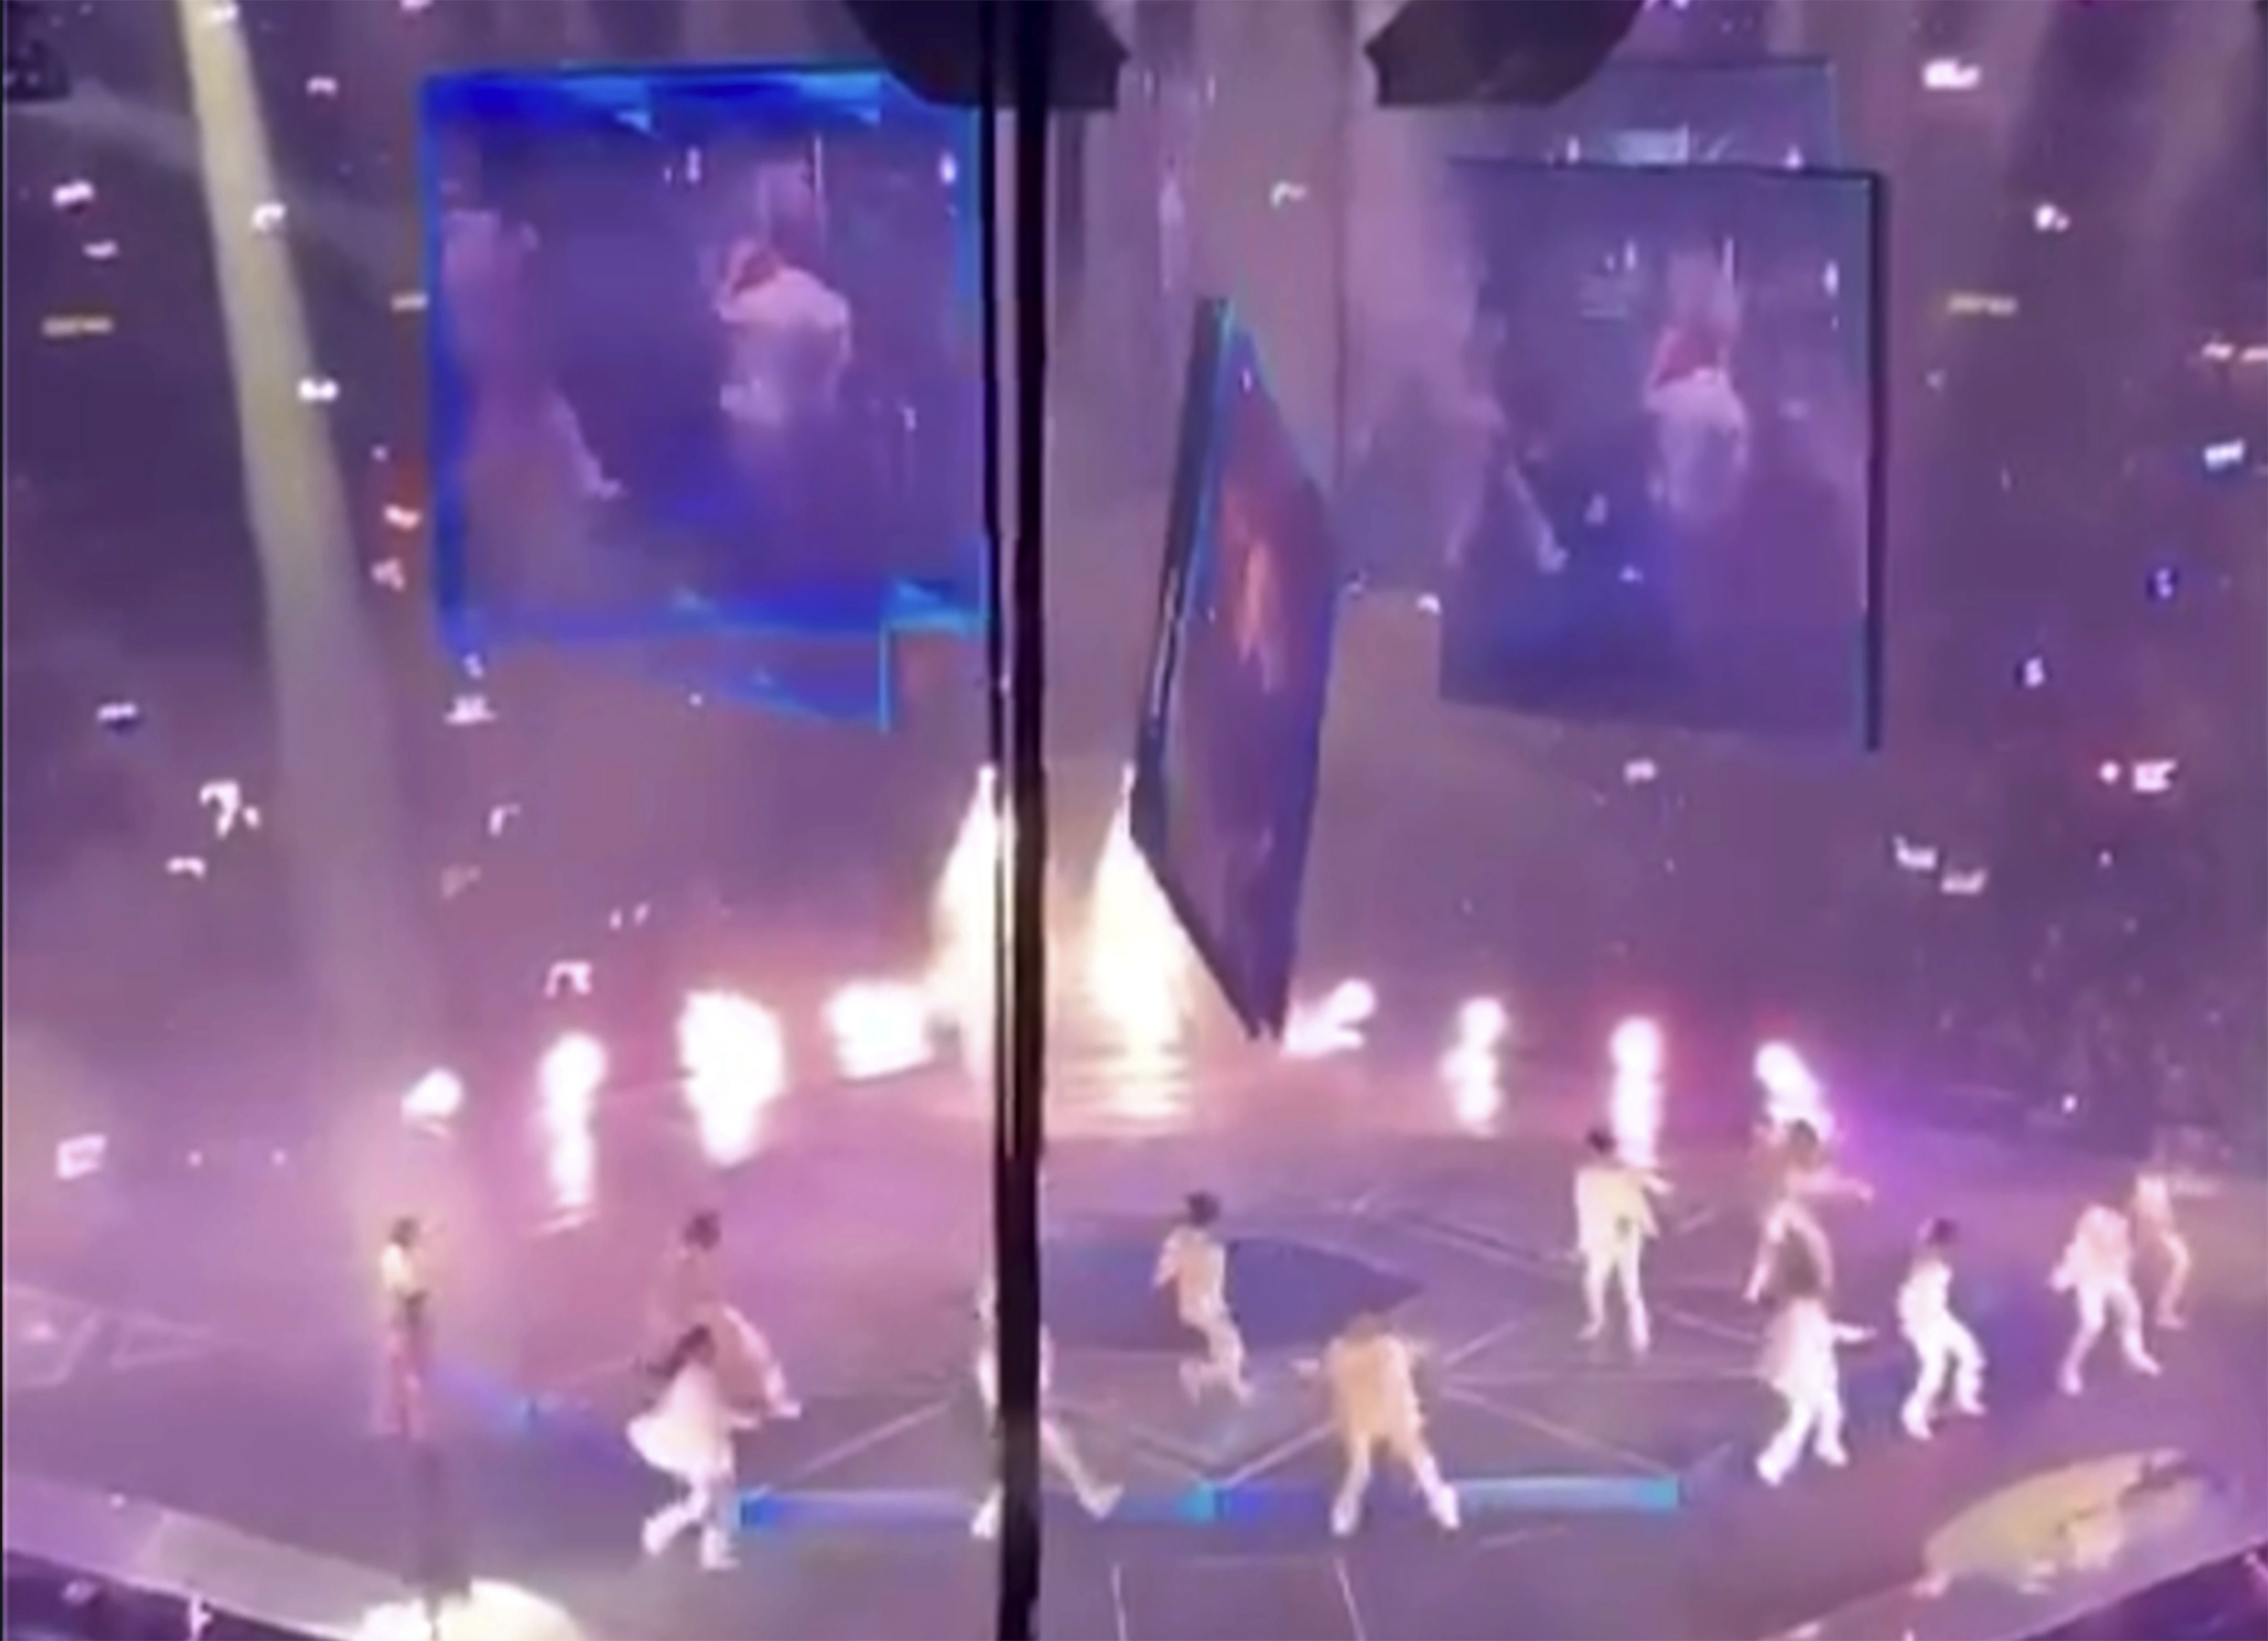 Una enorme pantalla de vdeo suspendida sobre el escenario cae sobre los artistas en un concierto de la banda Mirror.